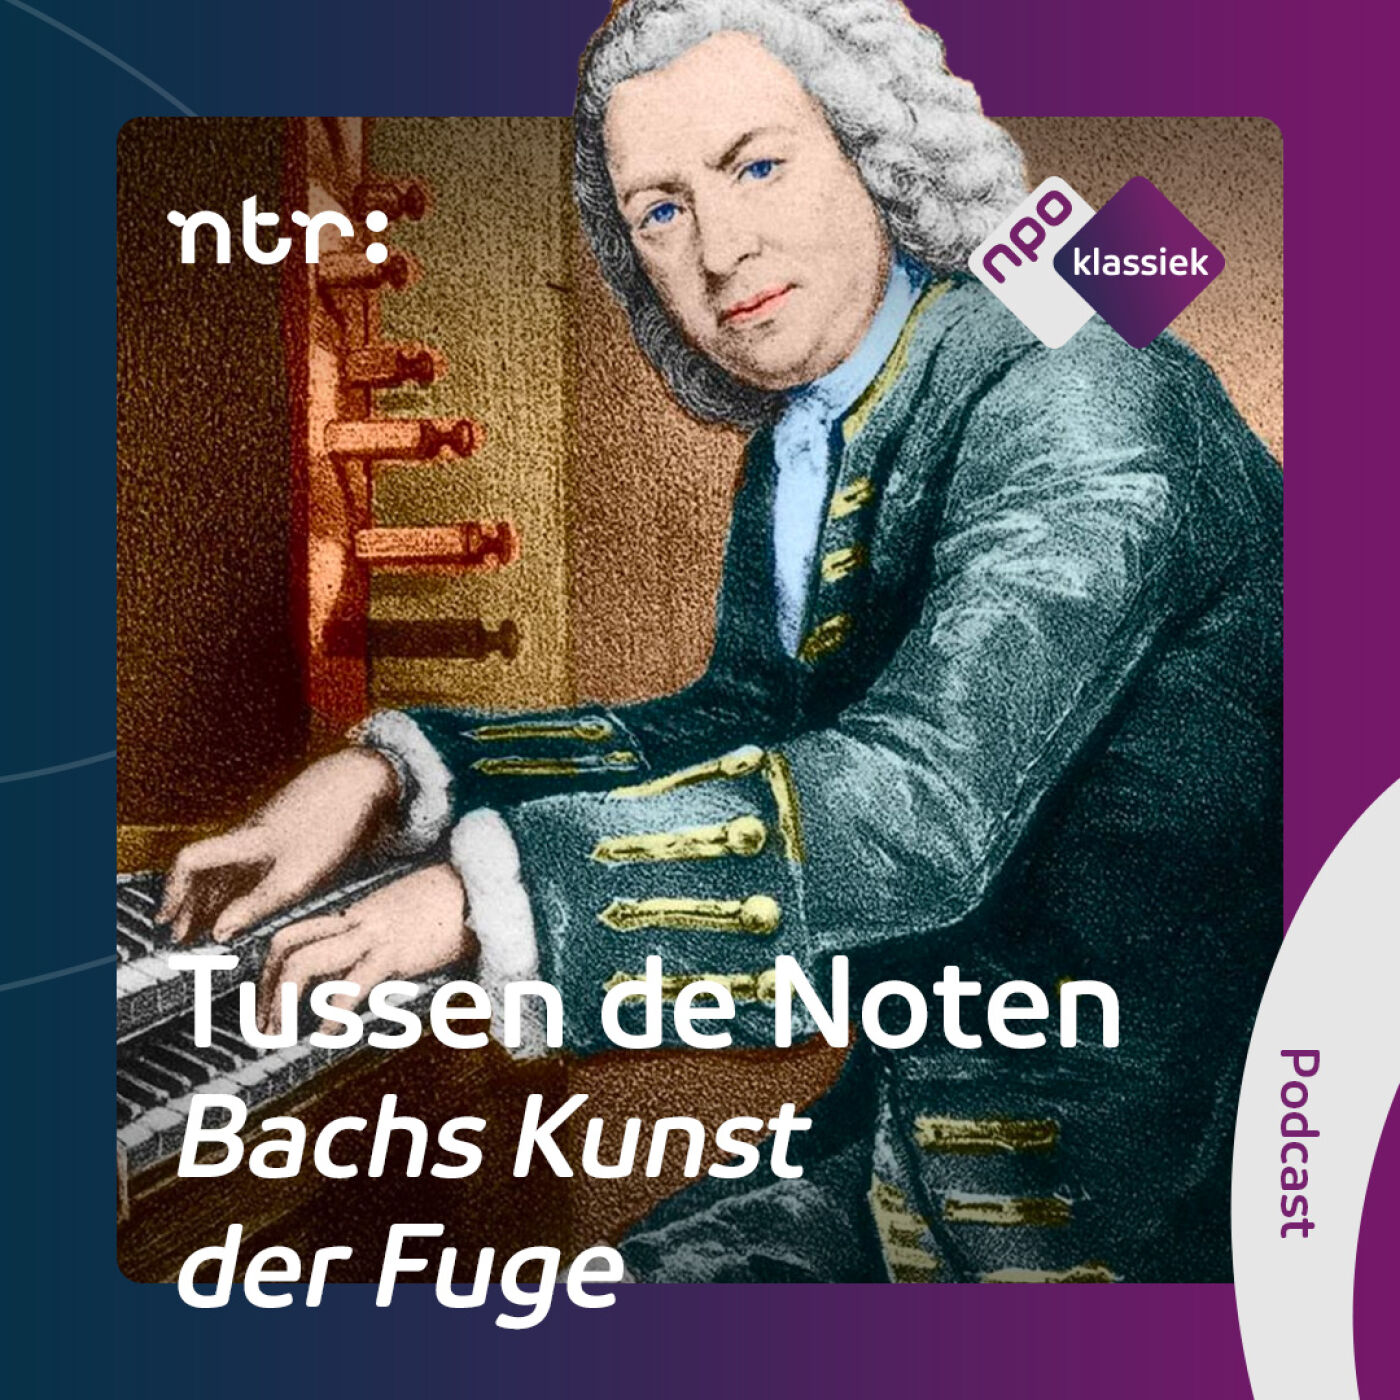 #3 - Bachs Kunst der Fuge: Het échte werk - 3. Fuga’s met meerdere thema’s (S04)